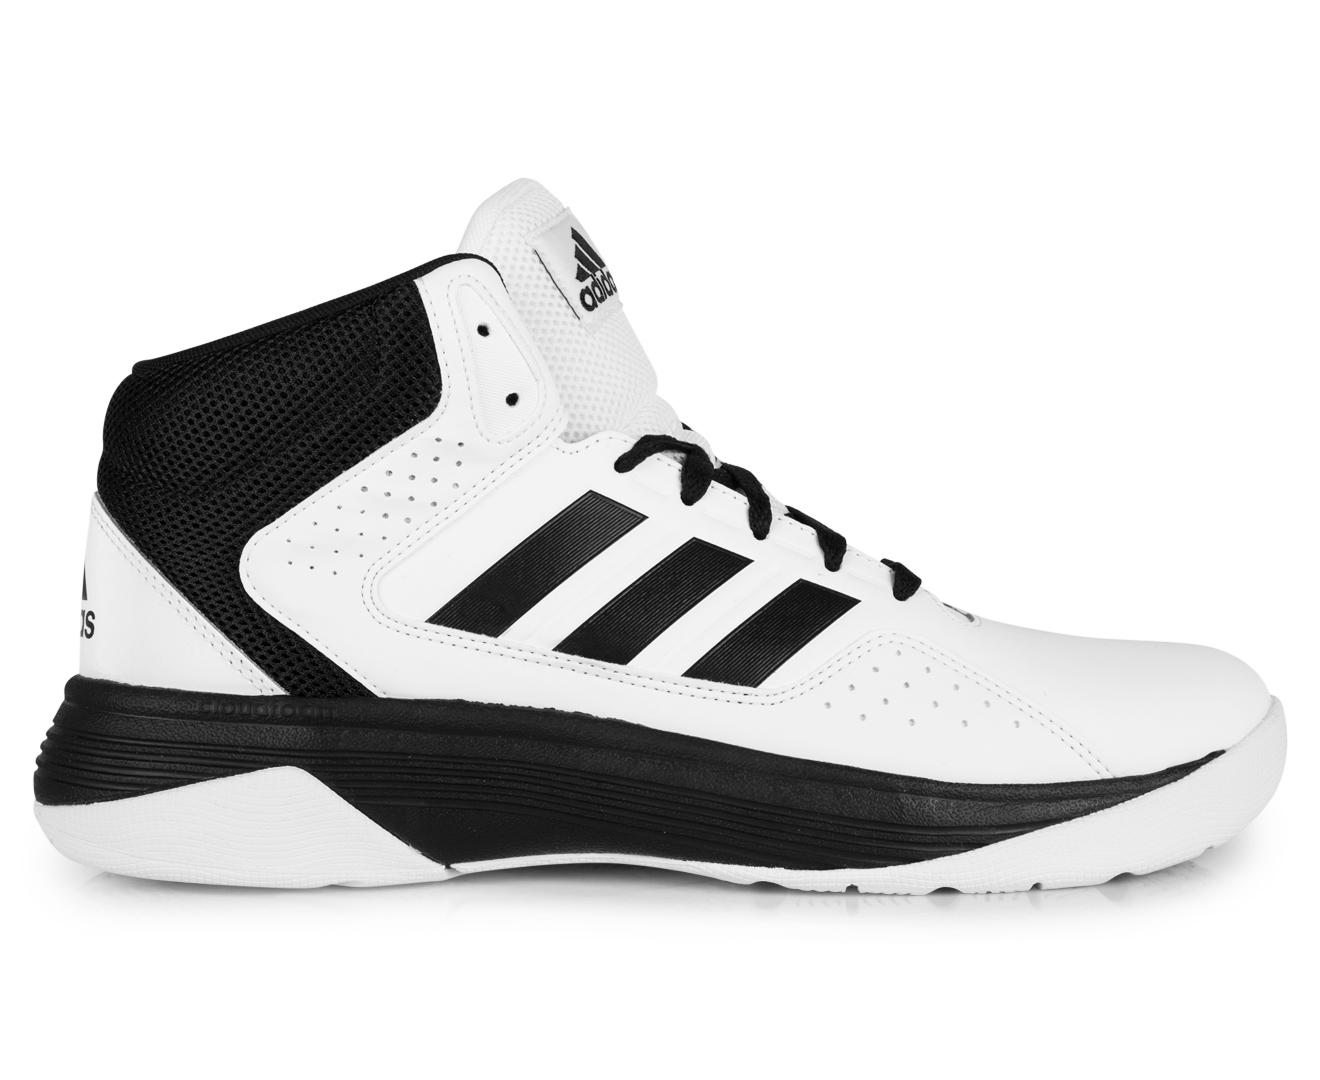 Adidas Men's Neo Cloudfoam Ilation Mid Shoe - White/Black | Catch.com.au